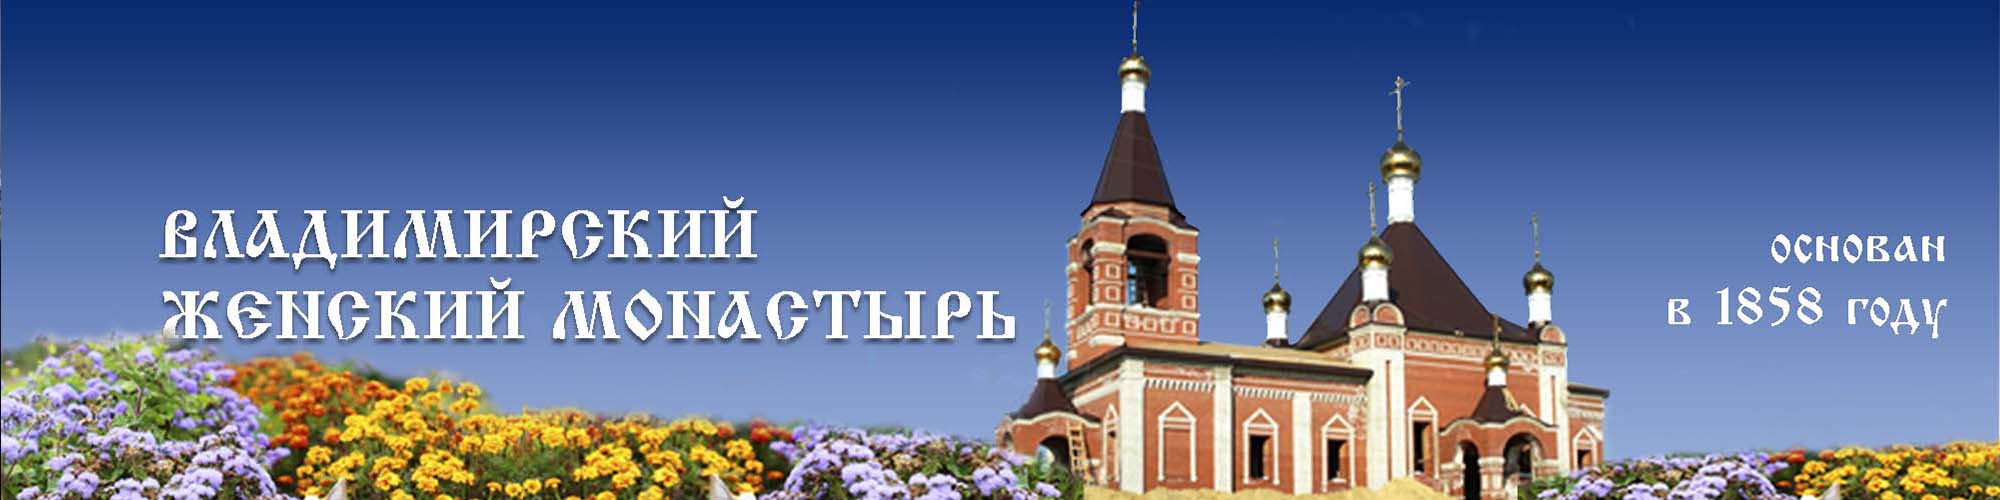 Божественная Литургия во Владимирском храме монастыря на день памяти мч. Татианы